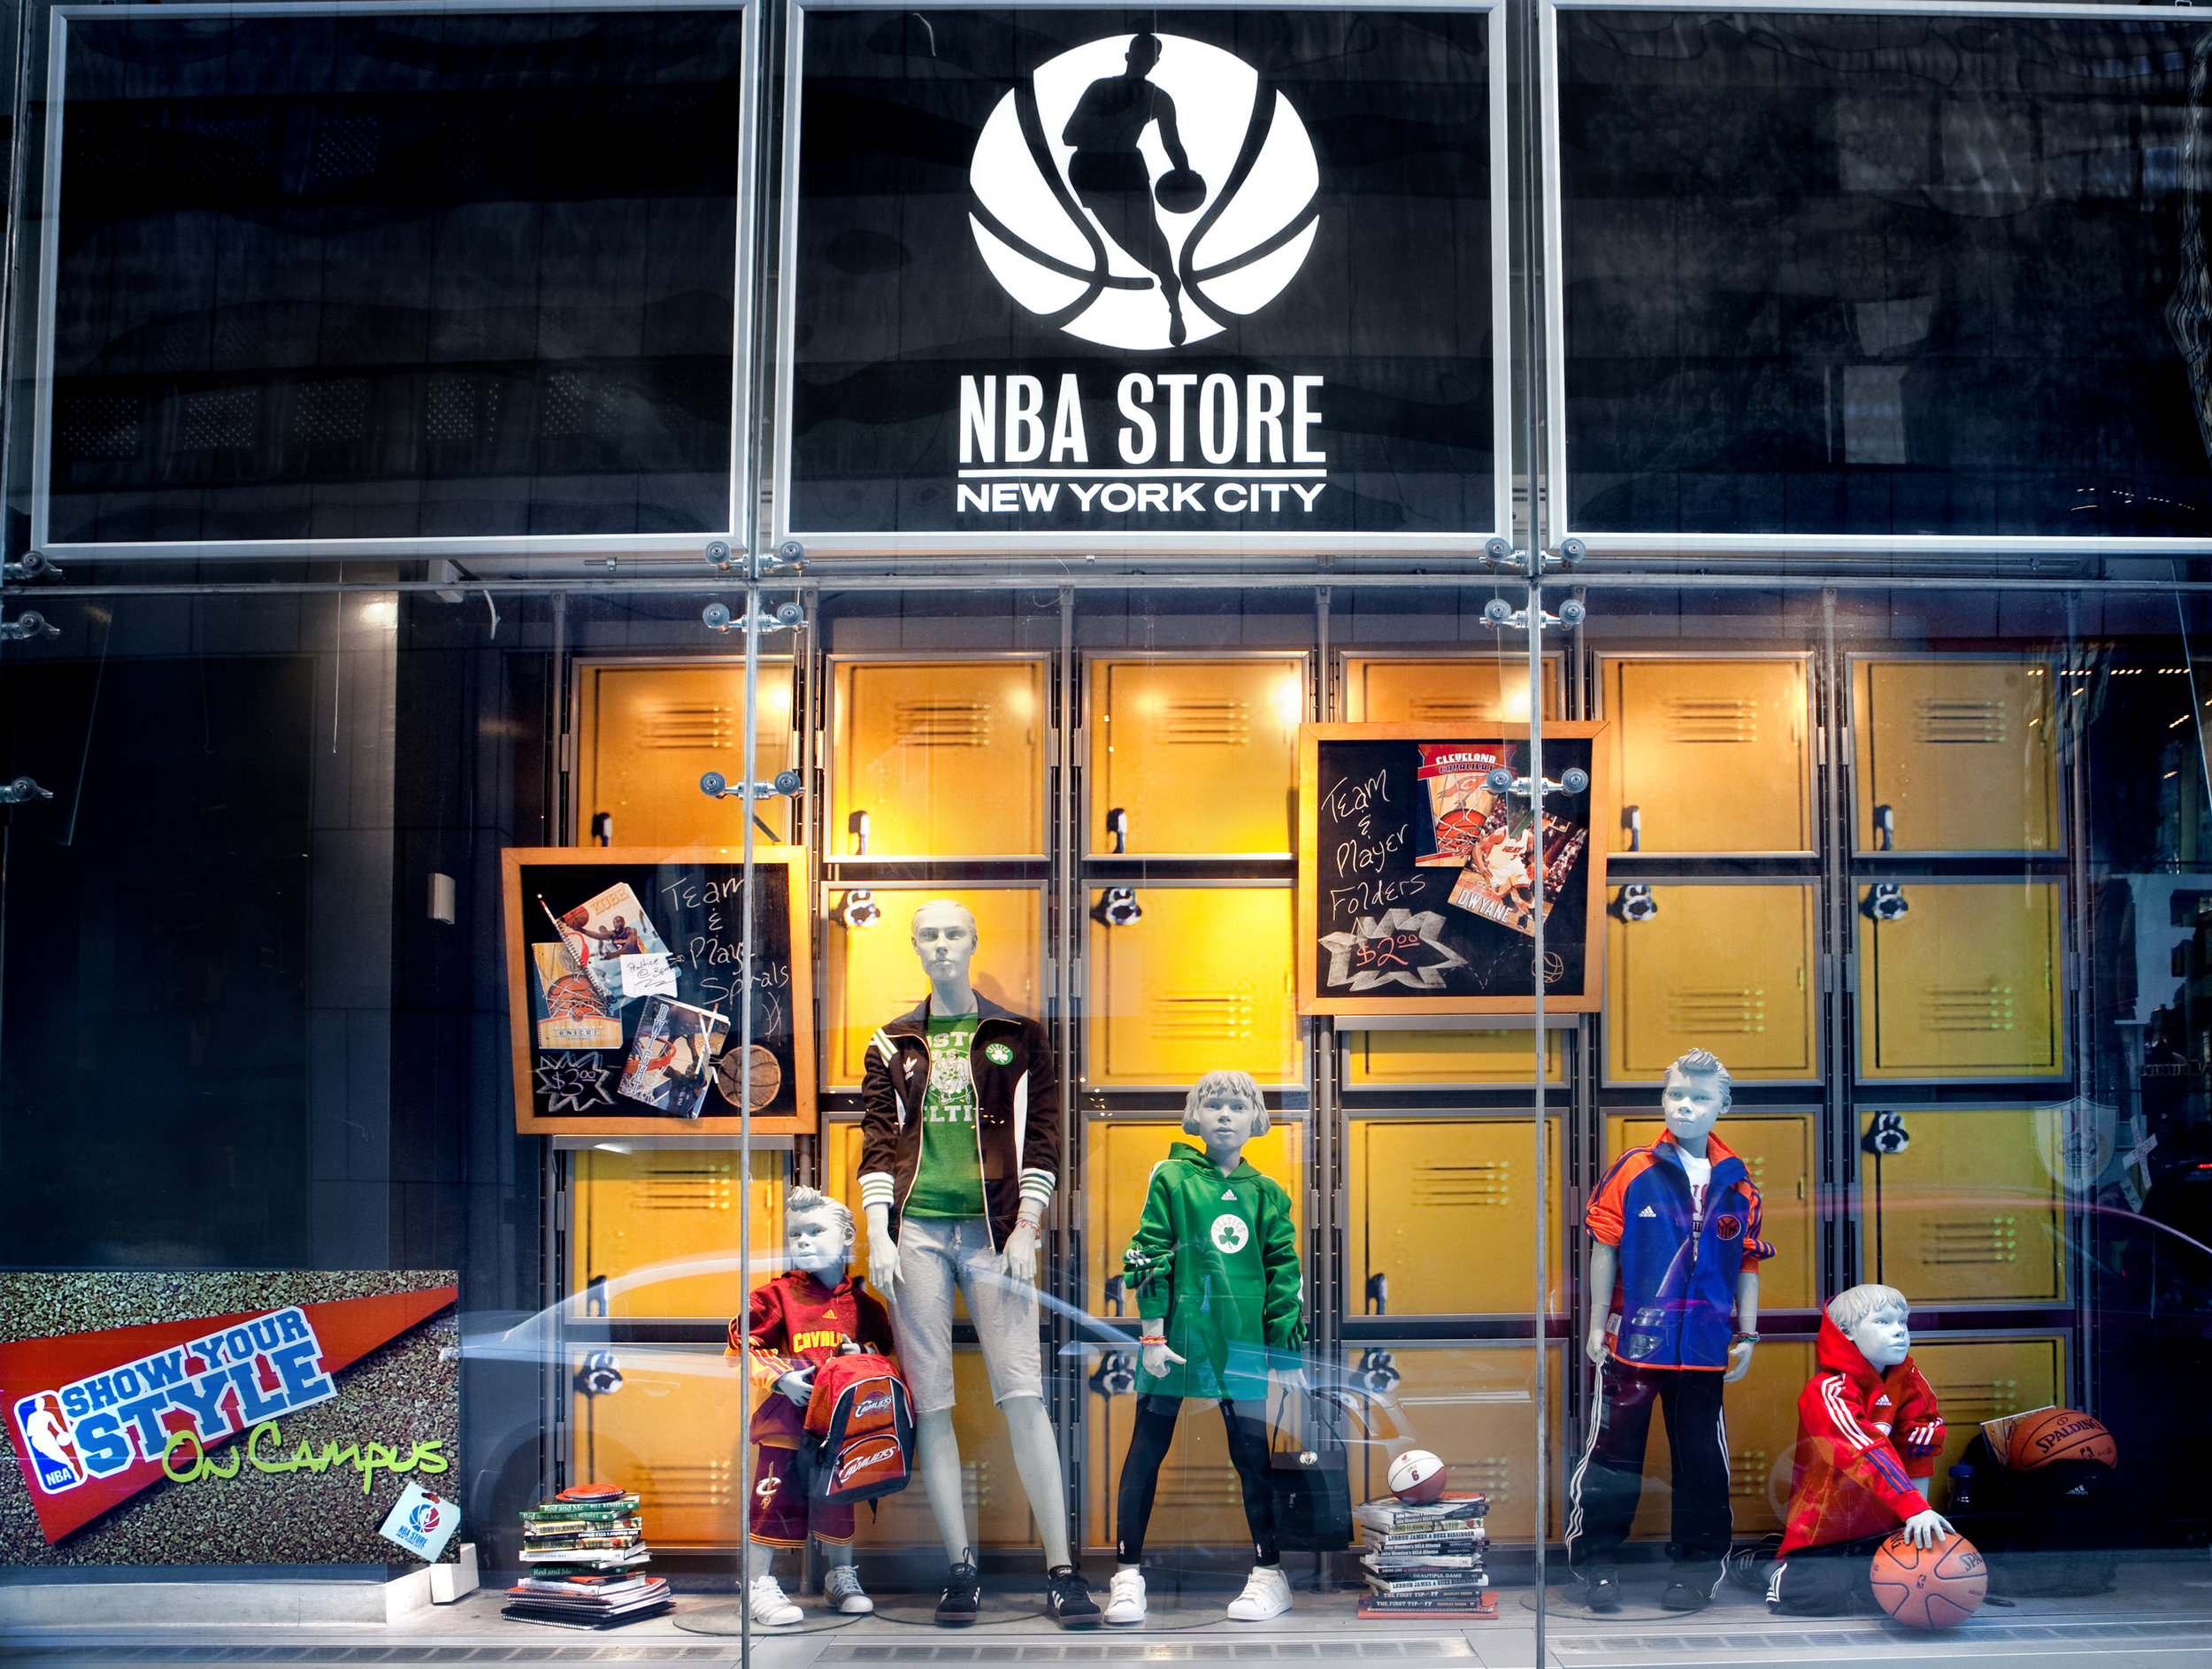 NBA_store0001.jpg